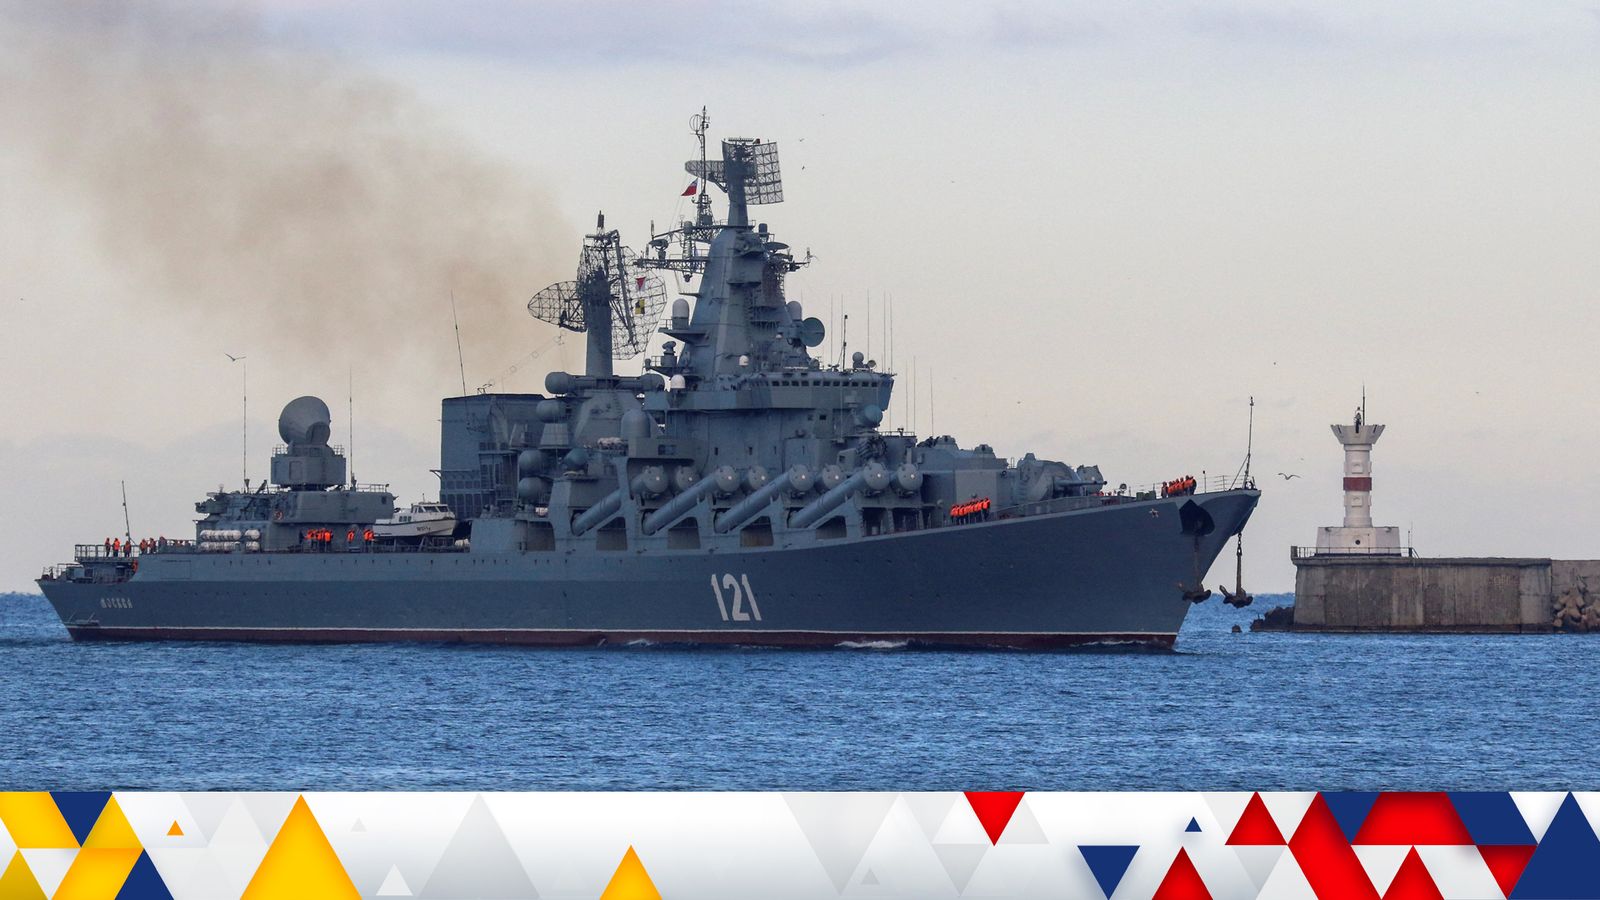 Guerre d’Ukraine: la Russie admet que le vaisseau amiral de la flotte de la mer Noire est en flammes alors que l’Ukraine revendique une attaque au missile |  Nouvelles du monde